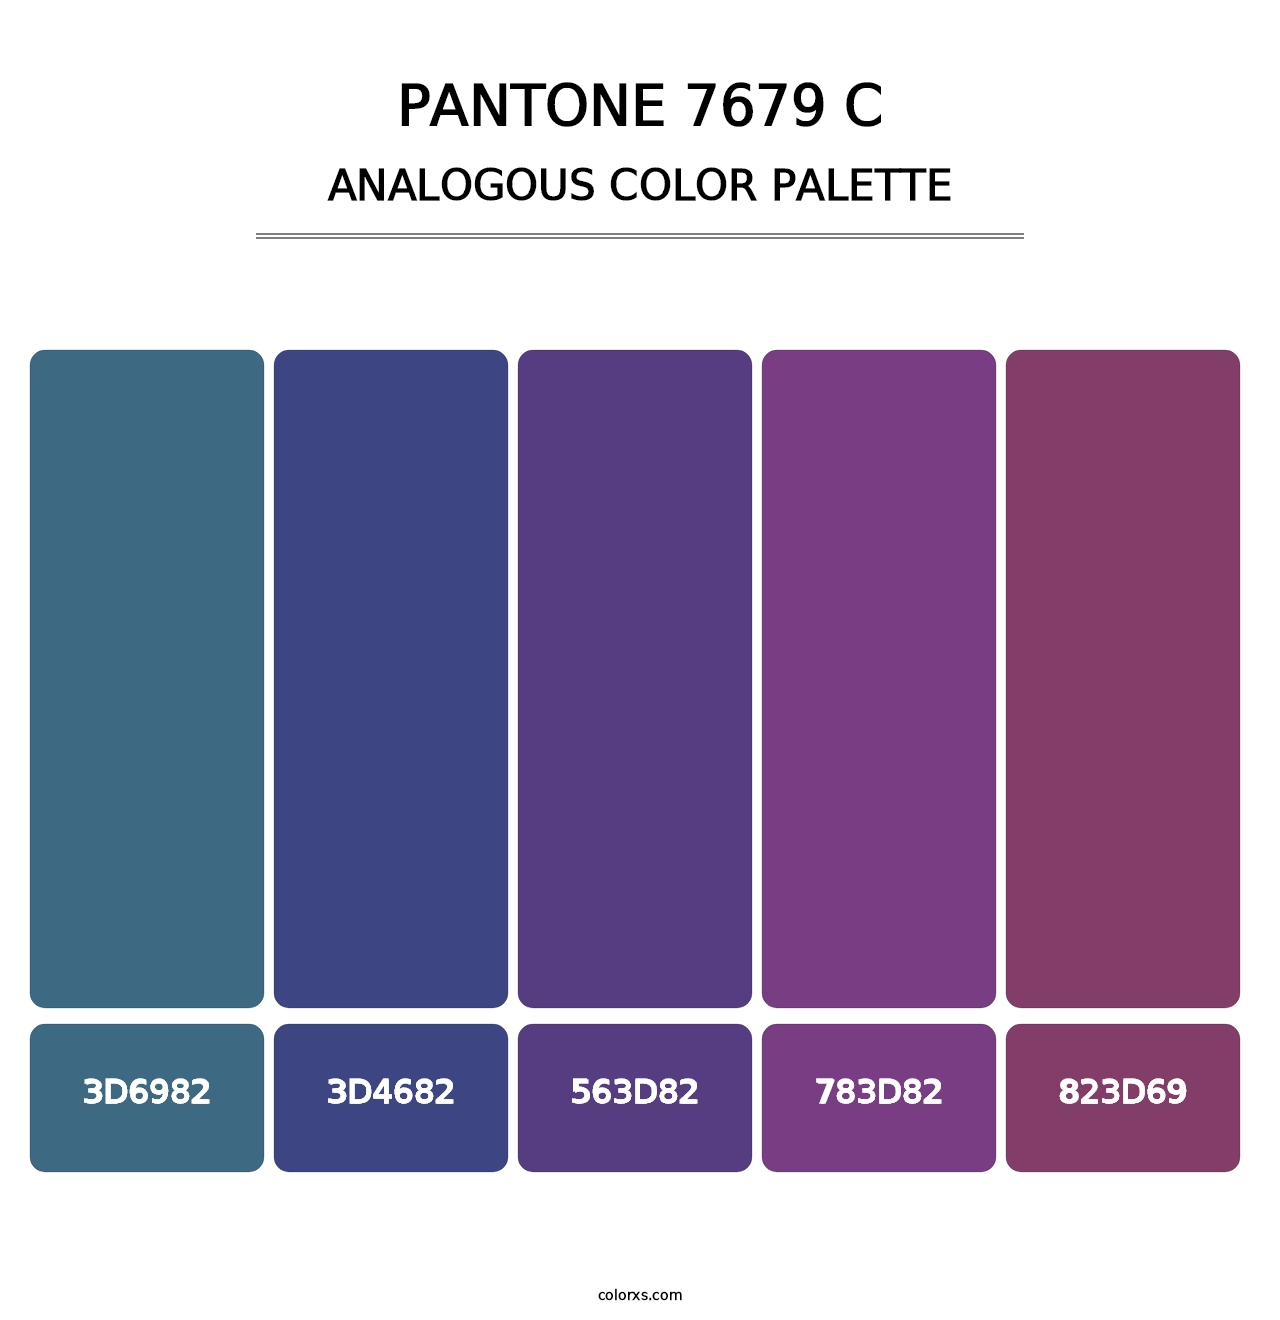 PANTONE 7679 C - Analogous Color Palette